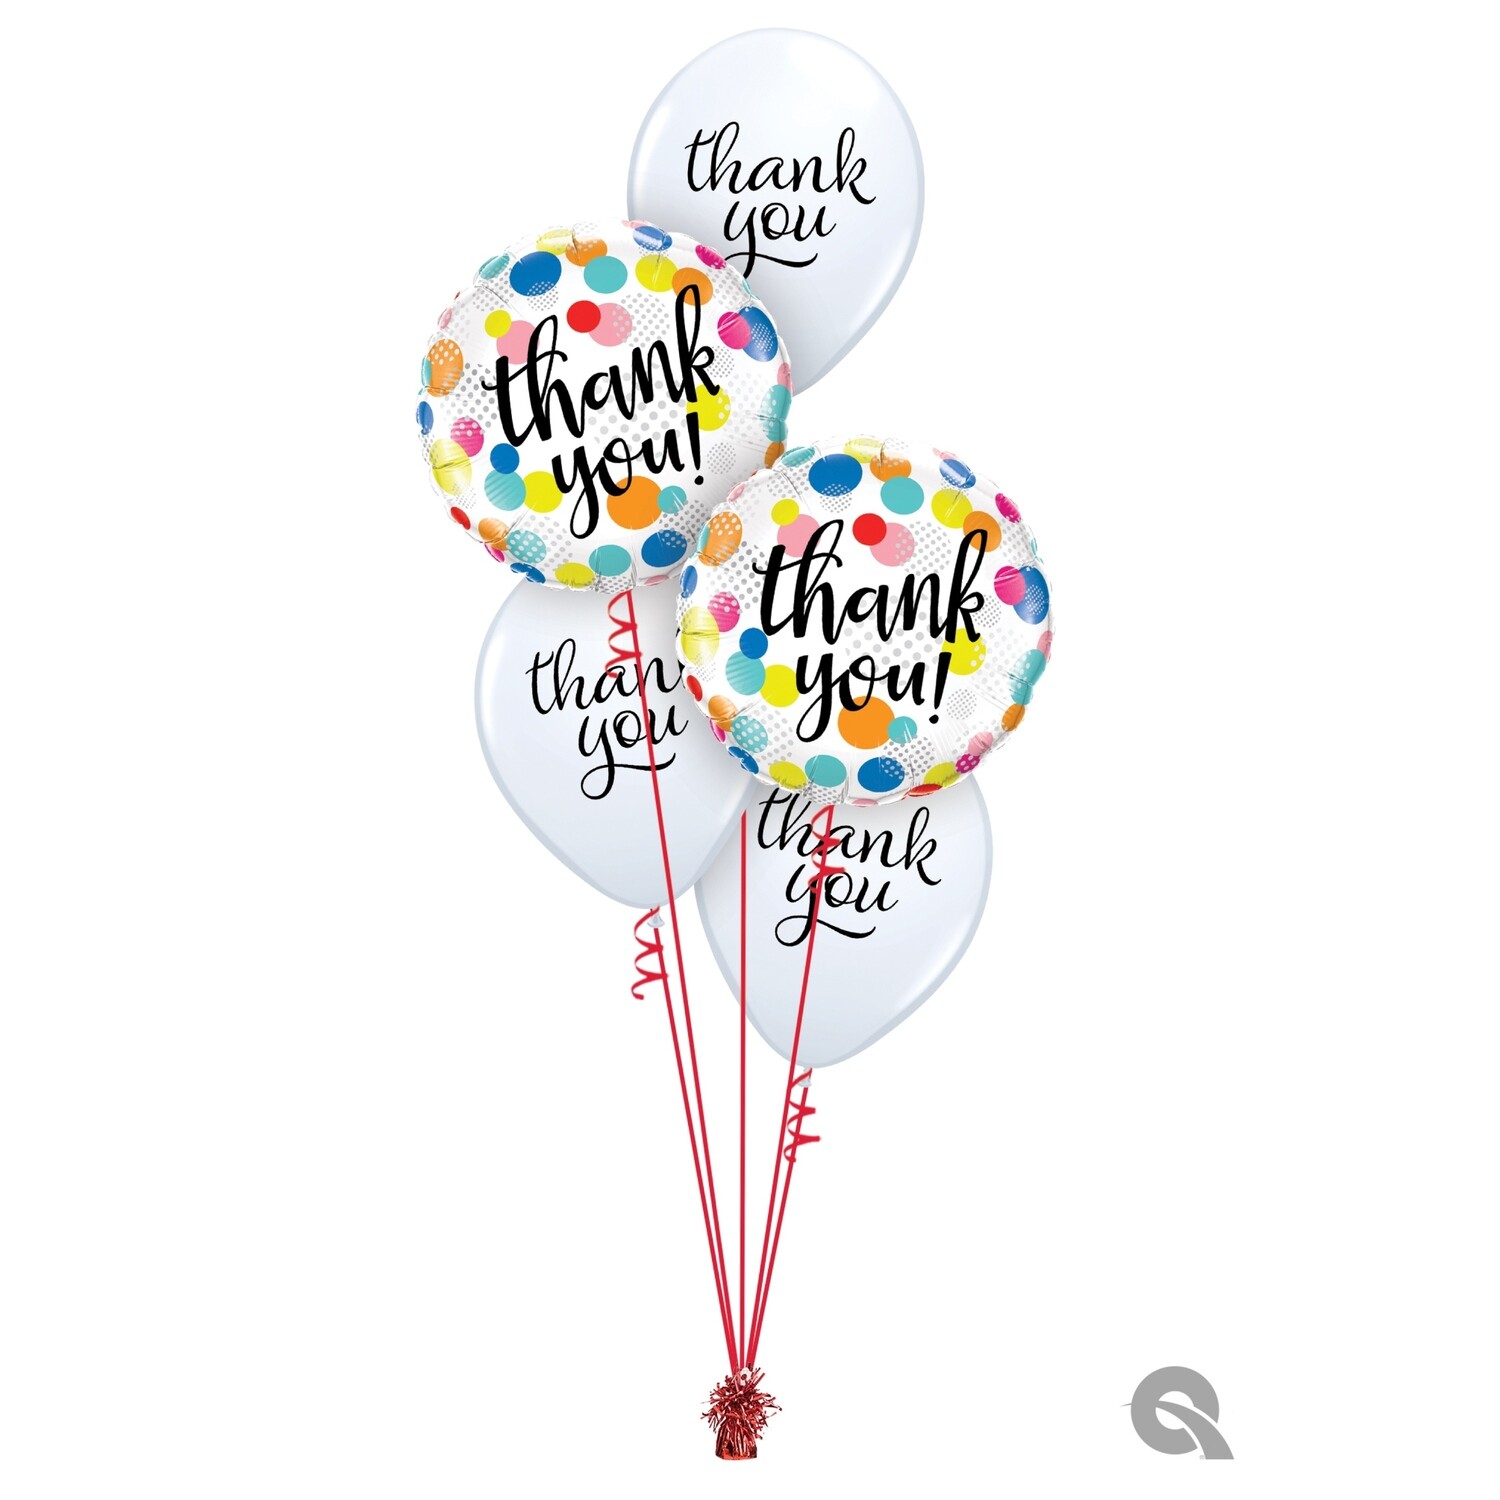 Thank You Balloon Bouquet Designs